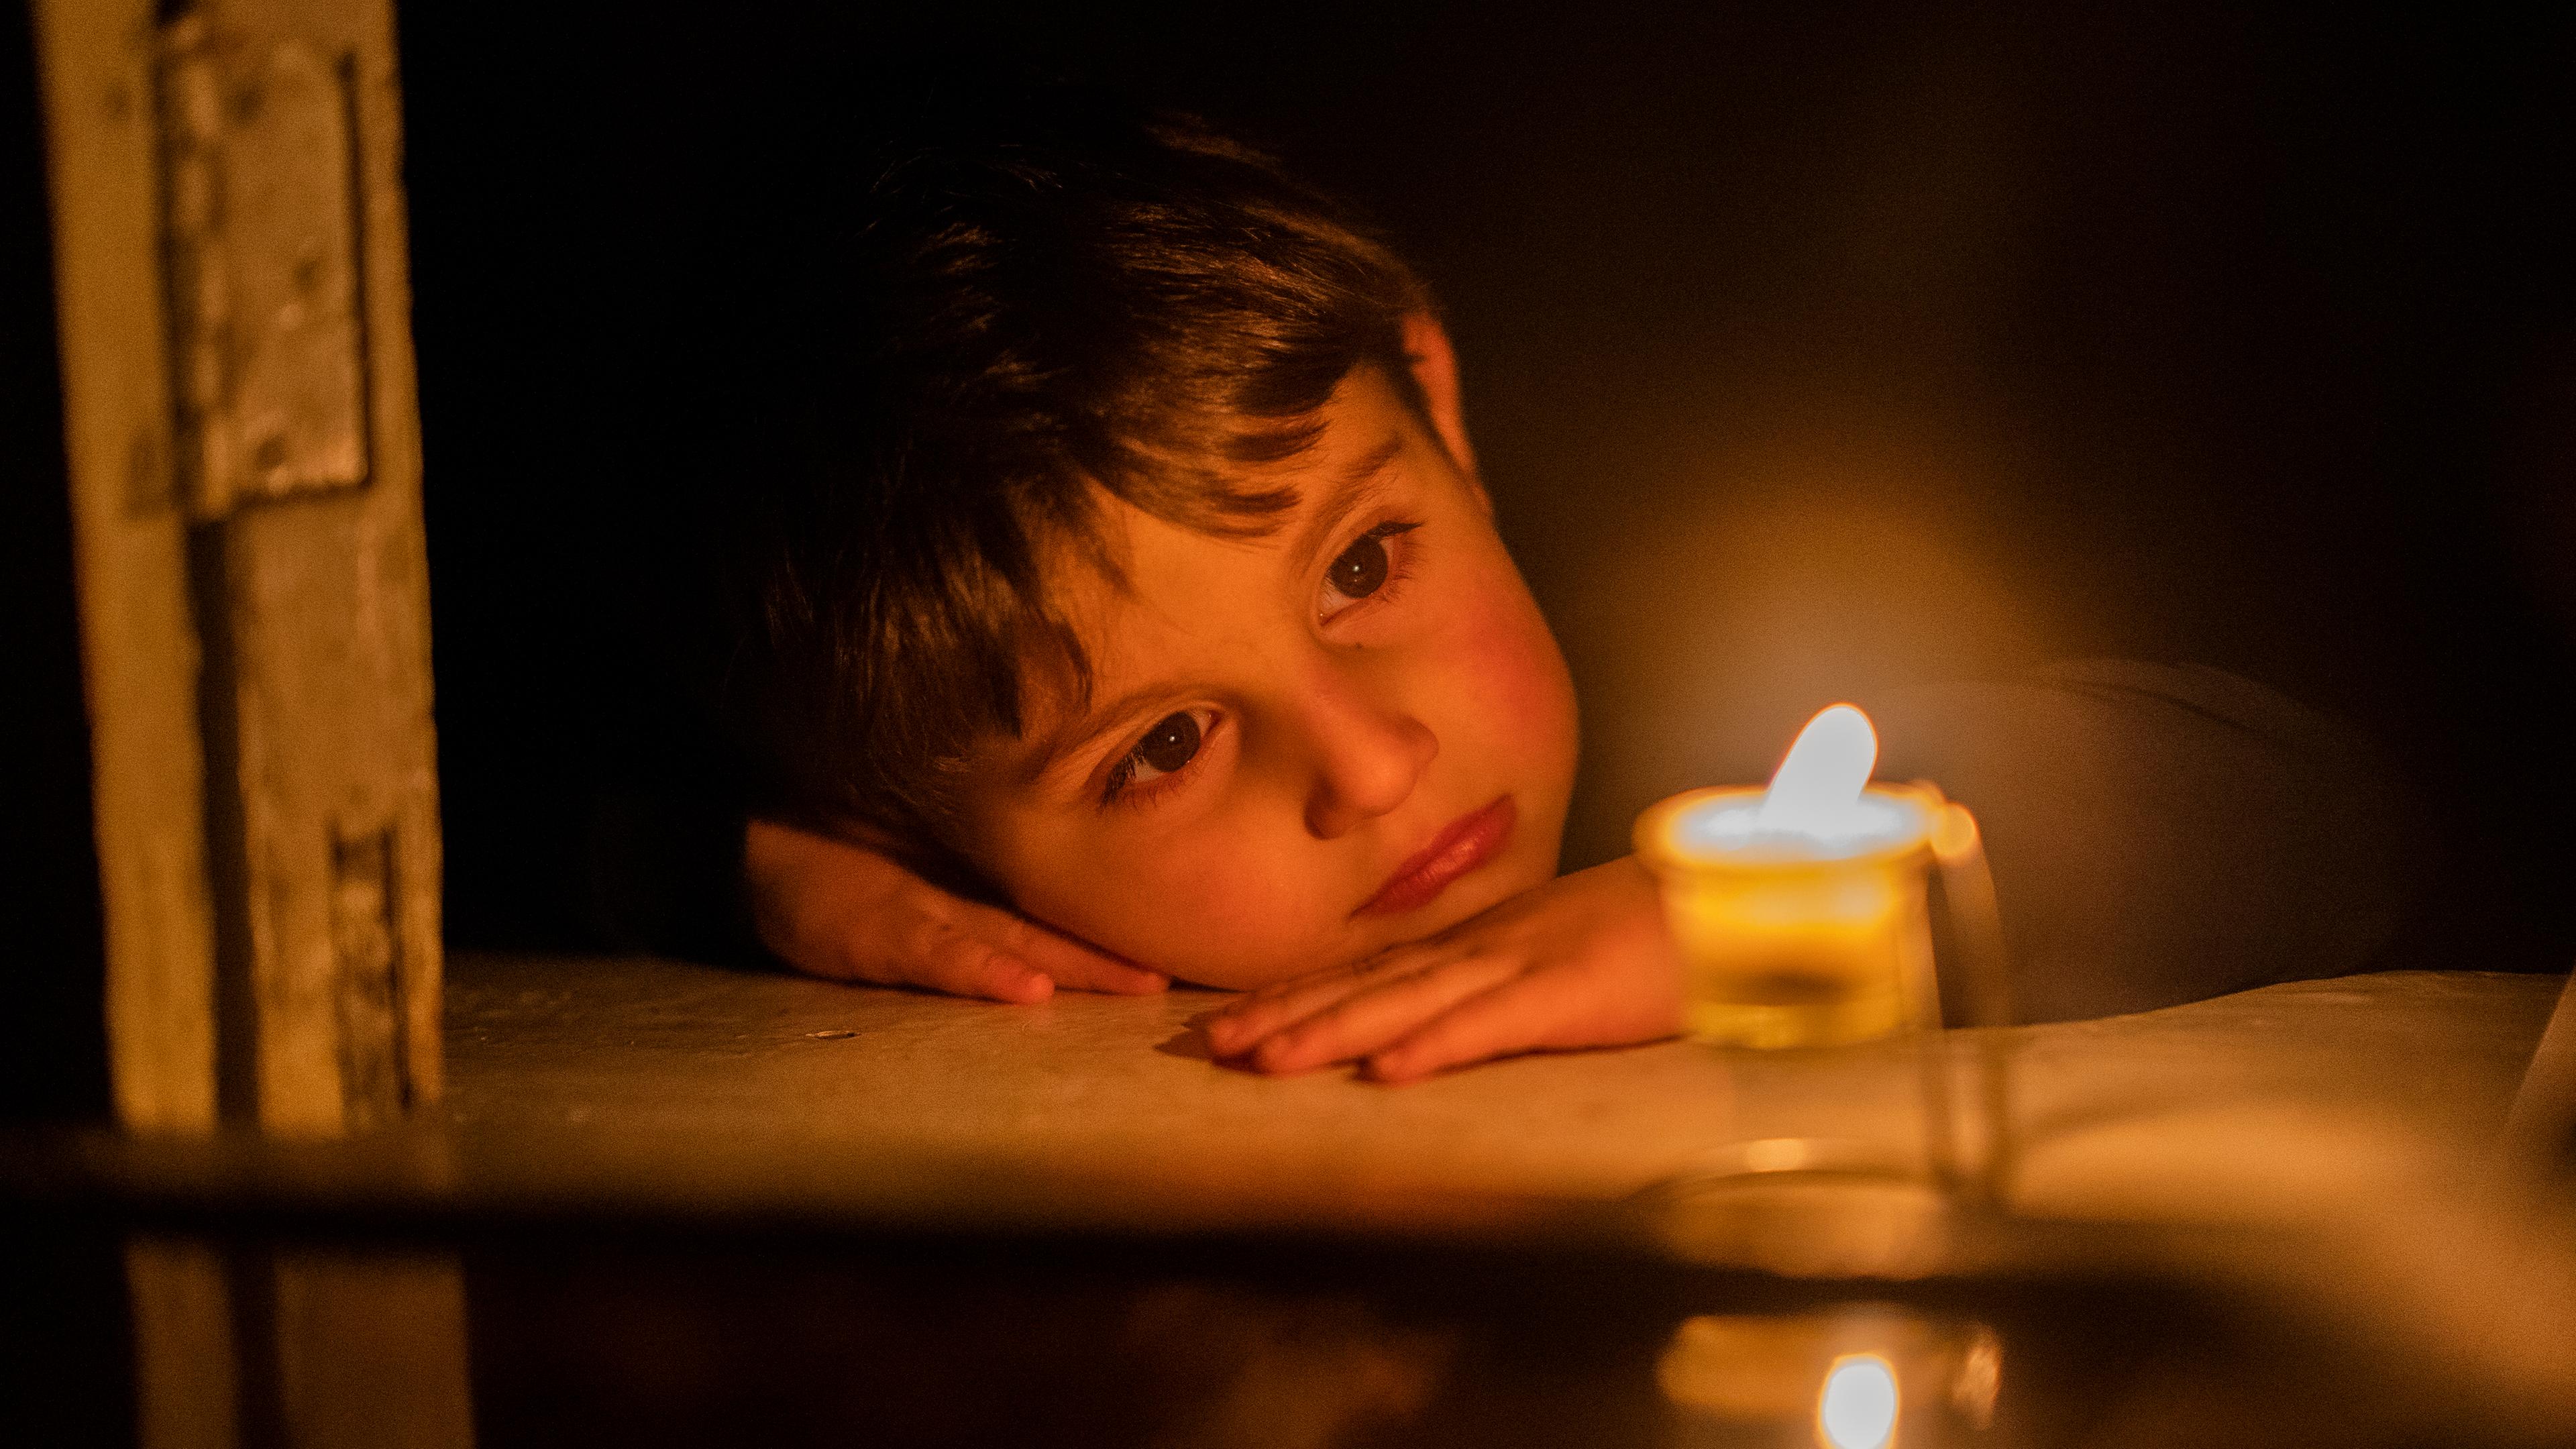 Aserbaidschan, Stepanakert: Ein Junge schaut auf eine Kerze, um sich zu Hause in Stepanakert, der Hauptstadt der separatistischen Region Berg-Karabach, auch bekannt als Artsakh, zu wärmen.